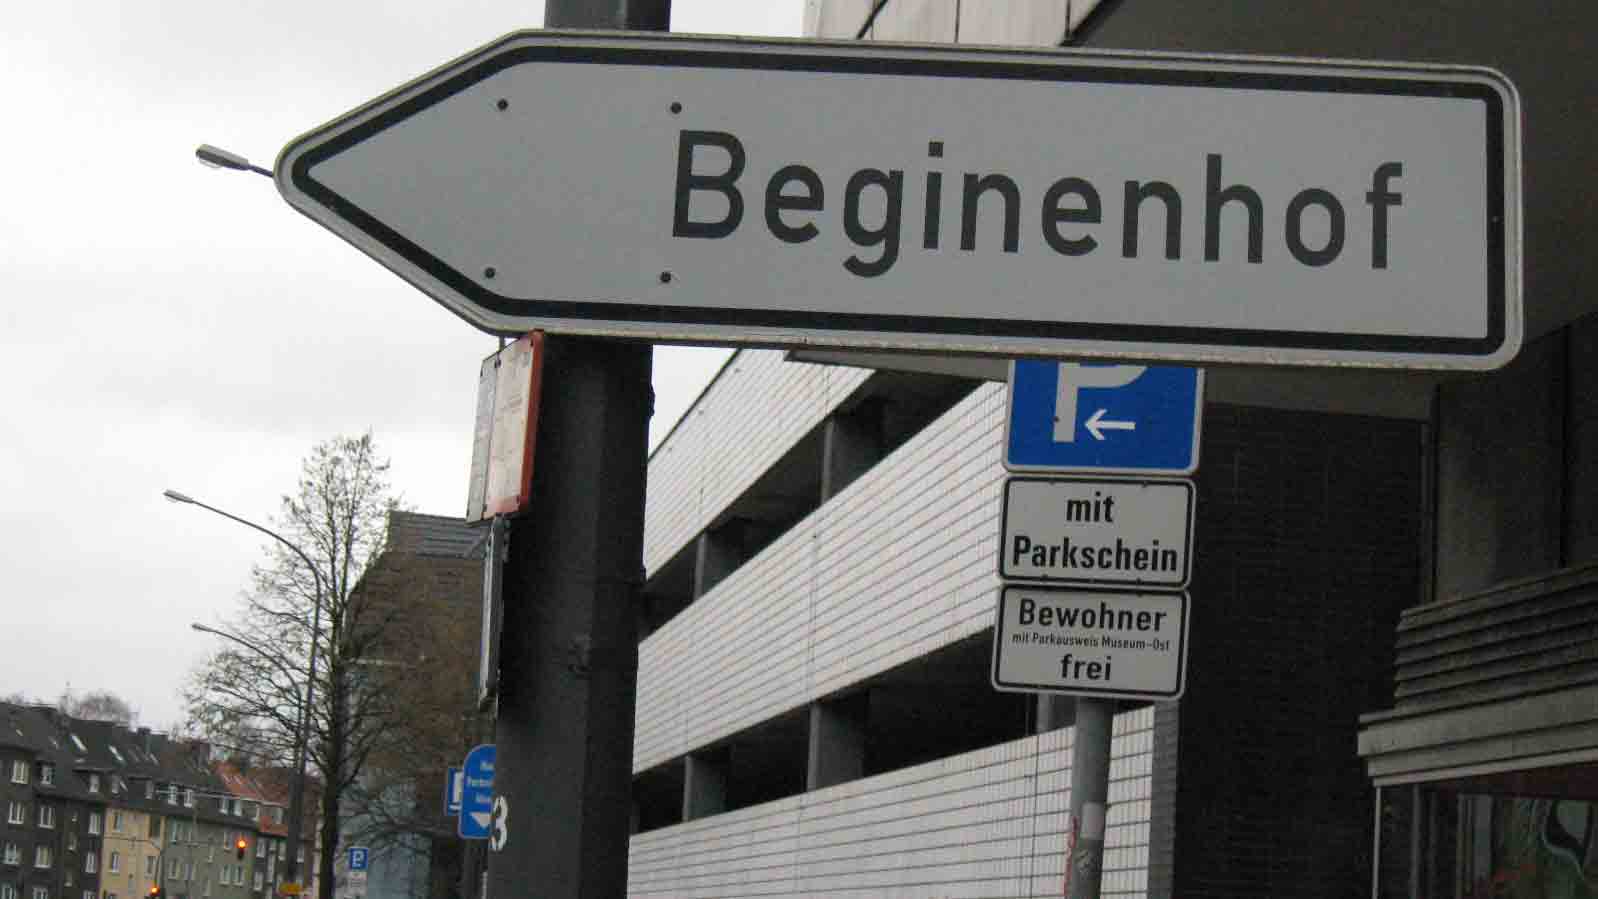 Hinweisschild zum Beginenhof in Essen, Copyright: Cornelia Saxe